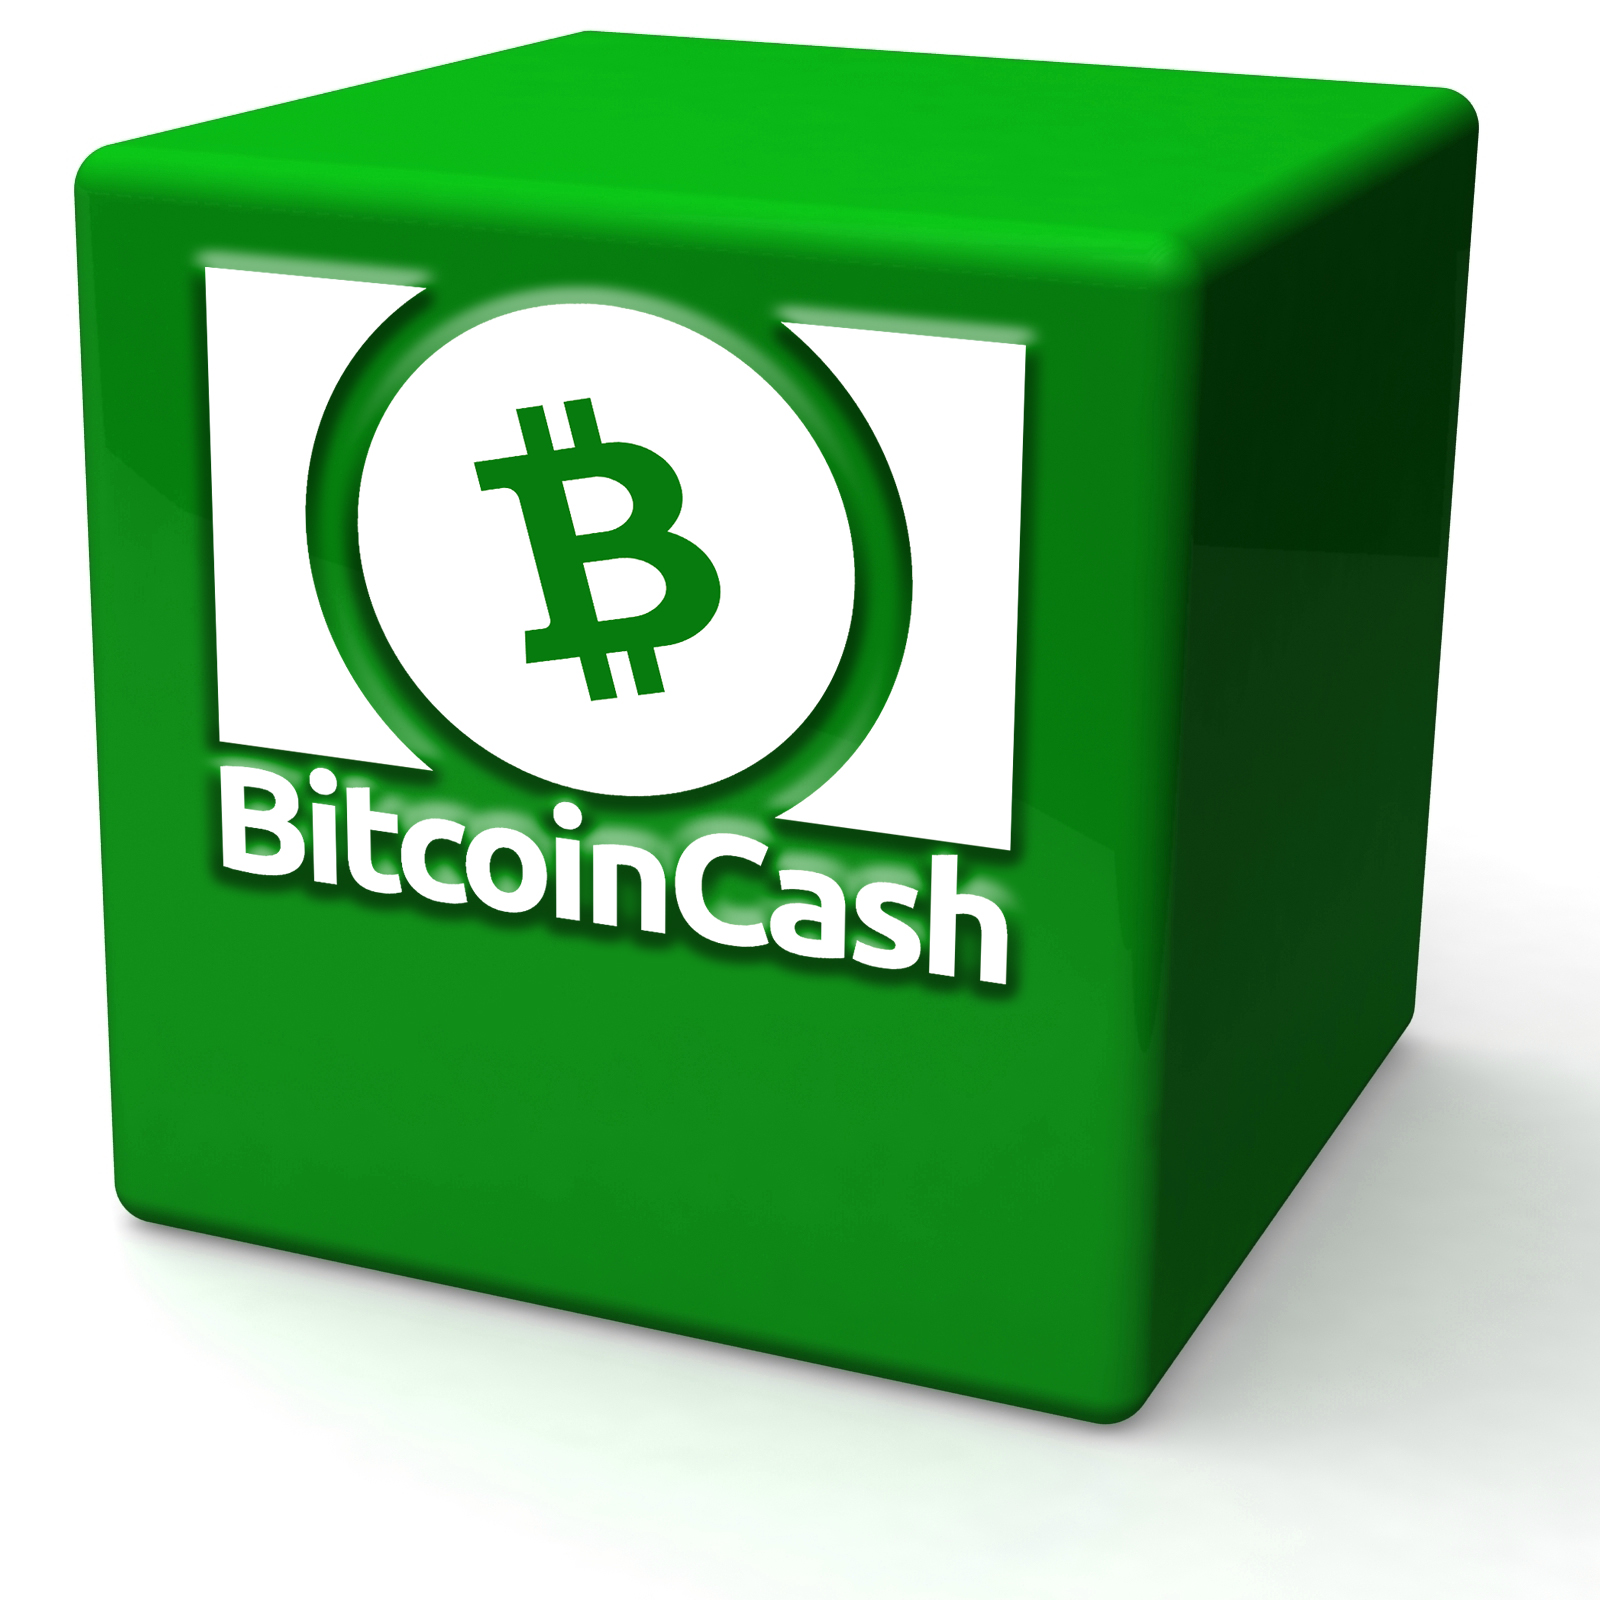 Bitcoin cash tx tel crypto coin